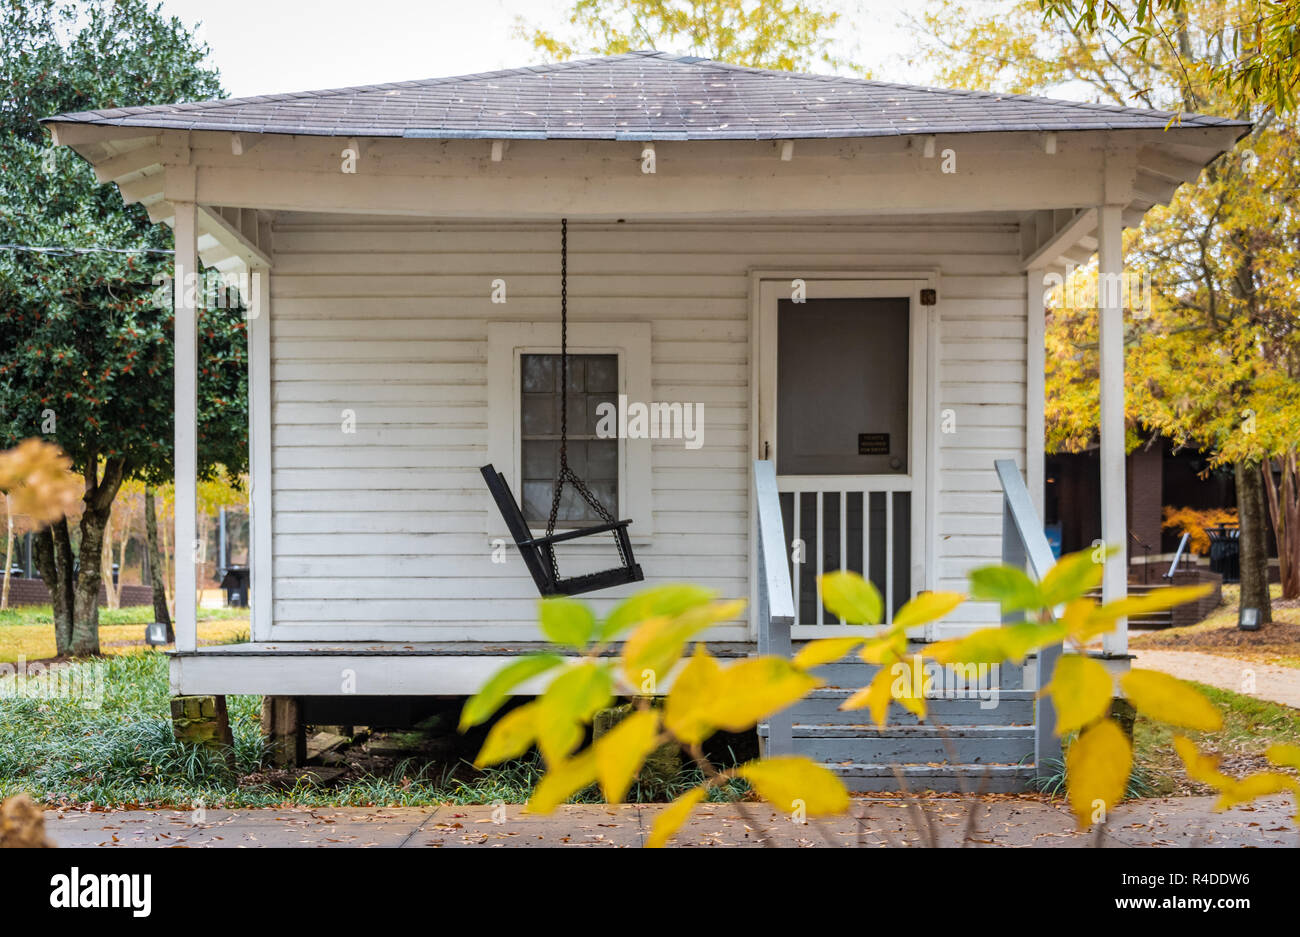 Geburtsort der Amerikanischen Symbol Musik Elvis Presley in Tupelo, Mississippi. Elvis war in diesem Haus von seinem Vater am 8. Januar 1935 gebaut geboren. Stockfoto